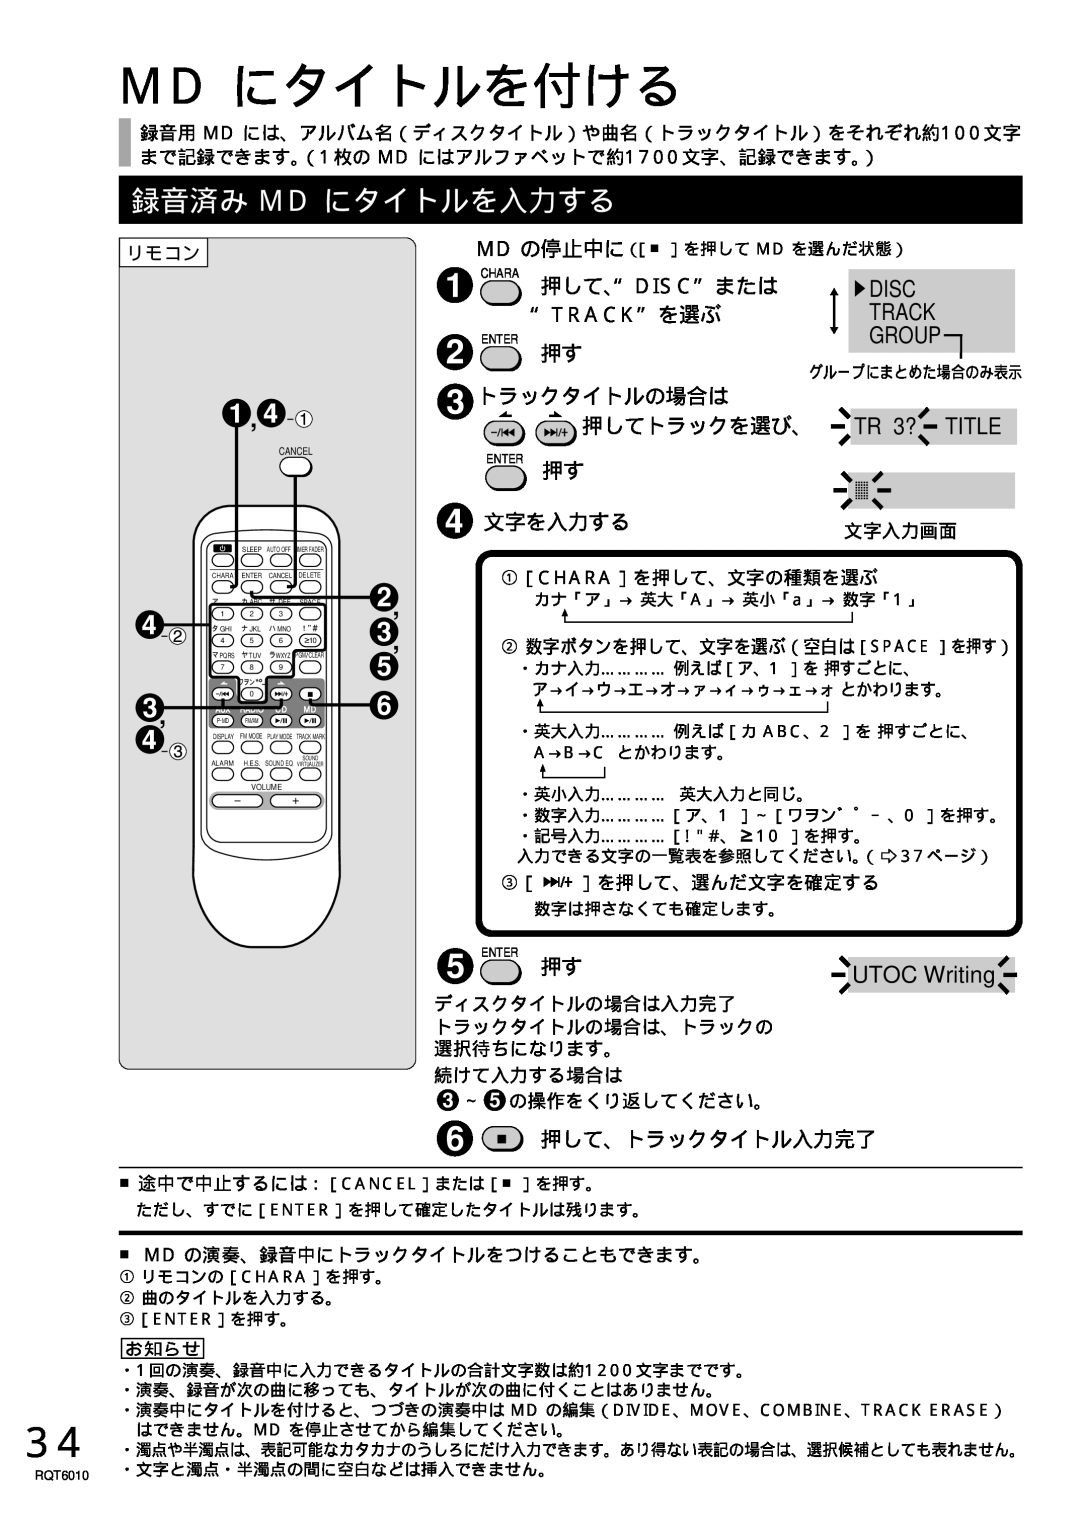 Panasonic RX-MDX55 Md にタイトルを付ける, 録音済み Md にタイトルを入力する, Group, TR 3? TITLE, 押して、“Disc”または, “Track”を選ぶ, トラックタイトルの場合は 